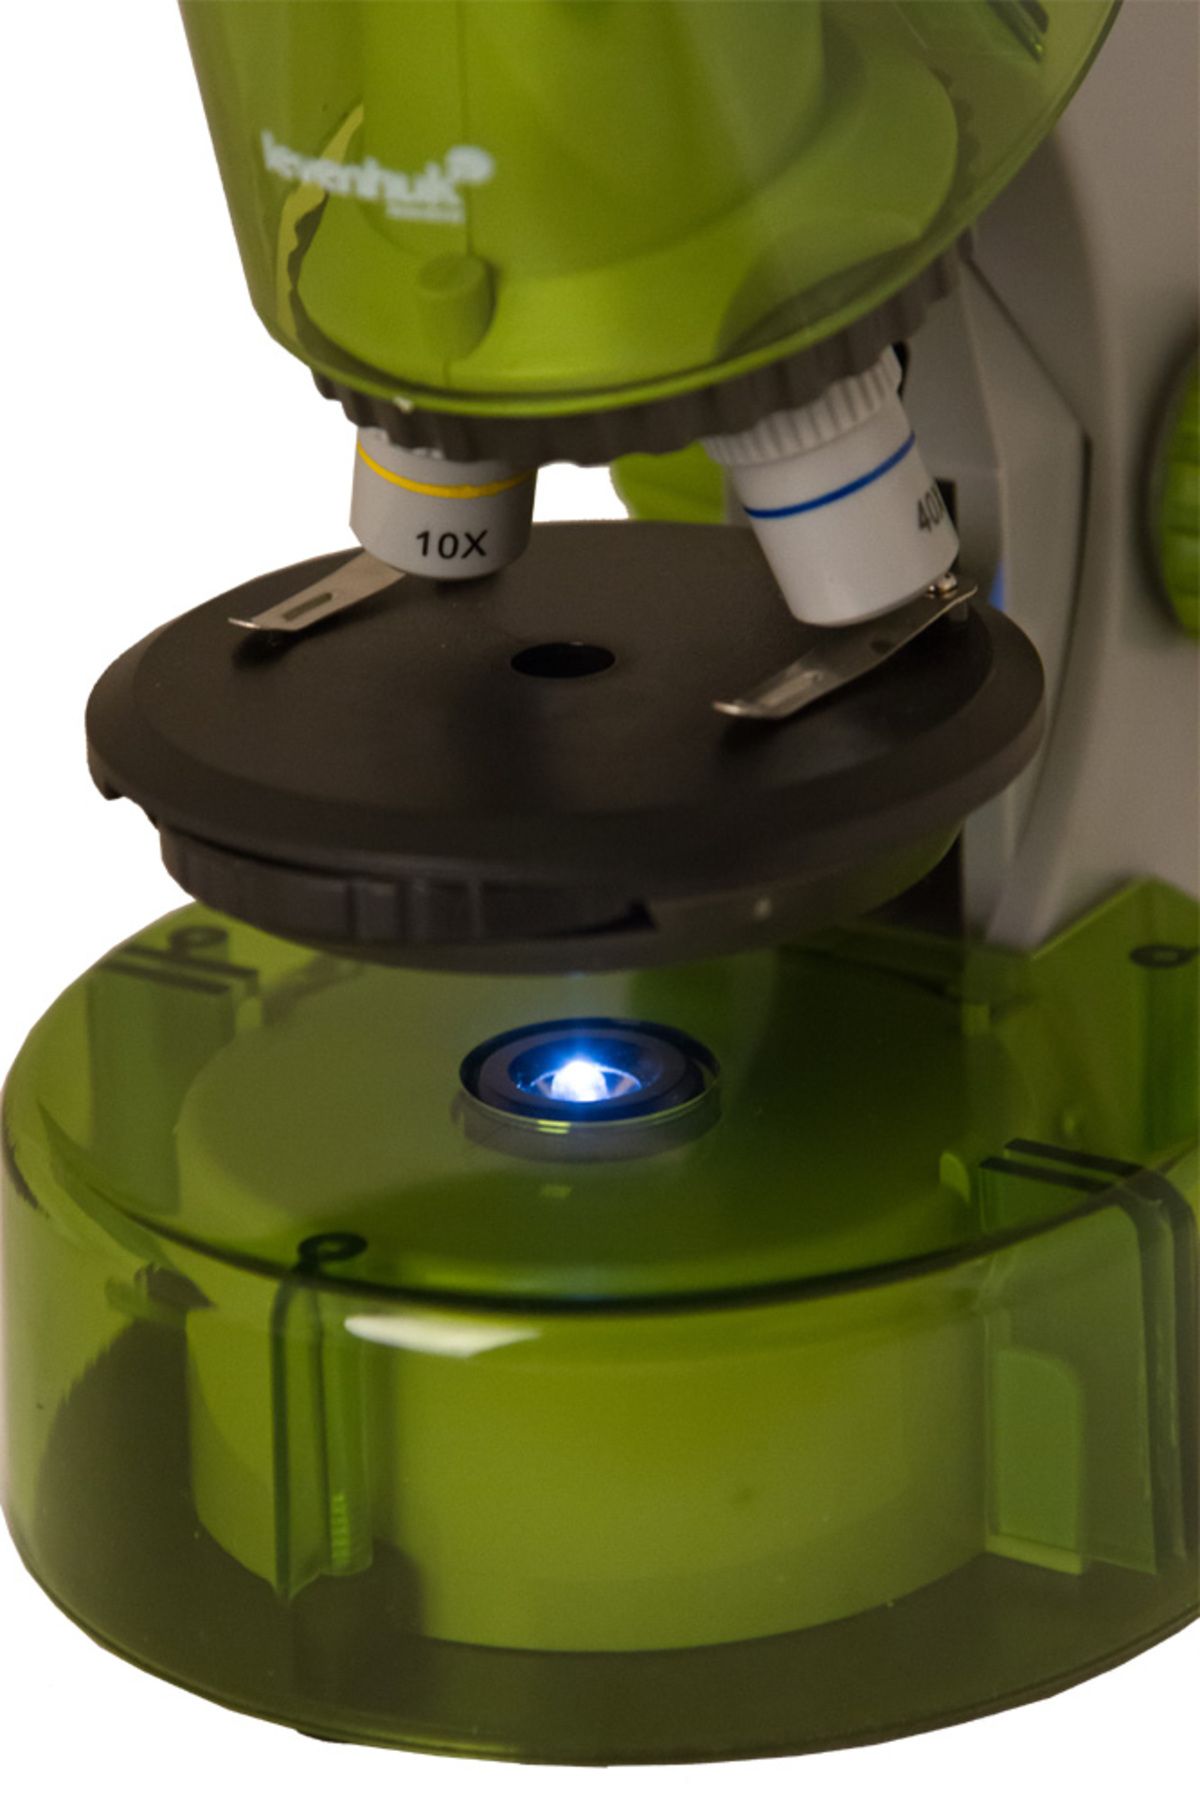 Genel Markalar Levenhuk Labzz M101 Lime/yeşil Limon Mikroskop (1243)